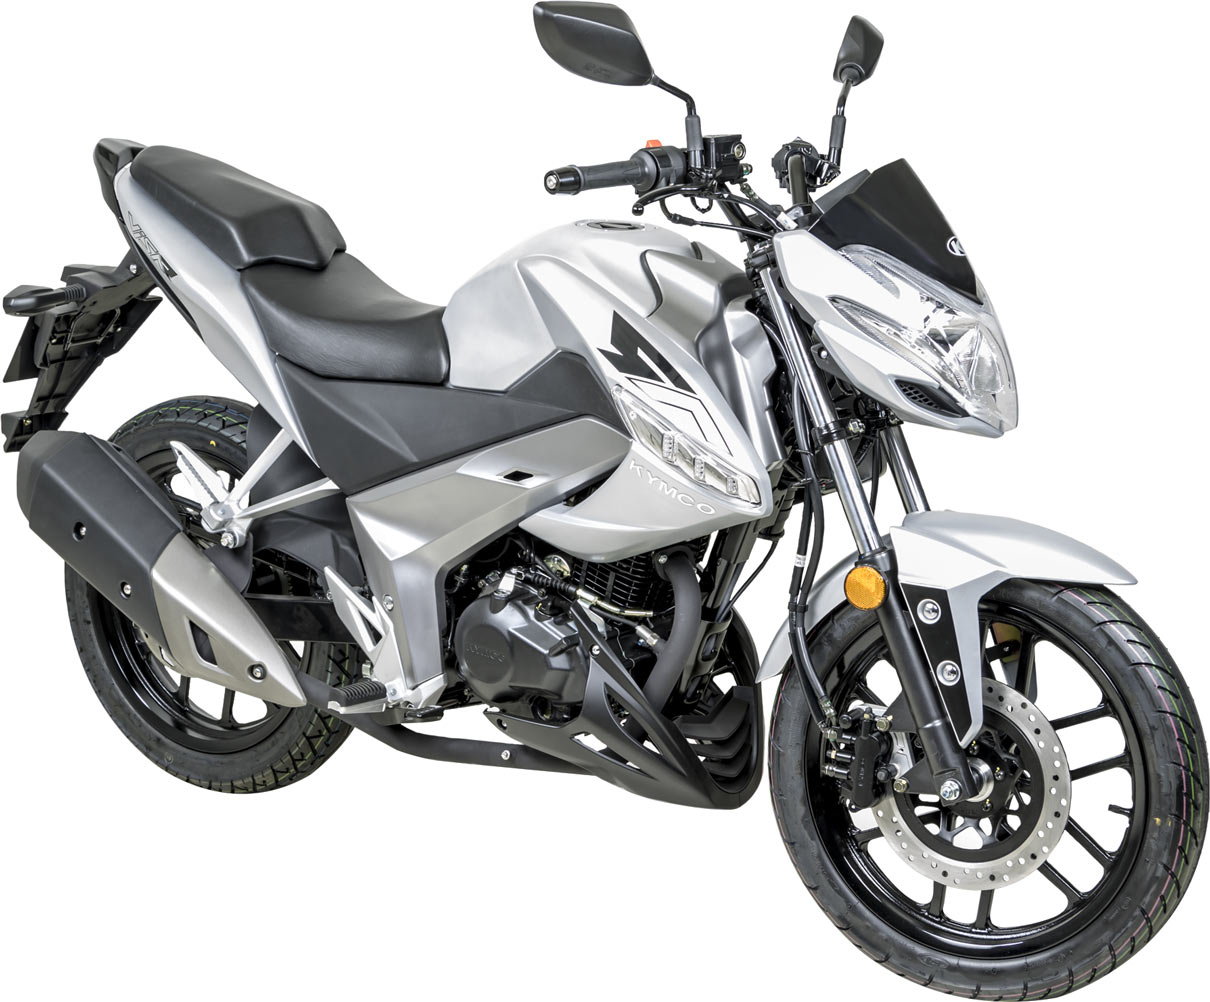 La Kymco Visar 125i est une moto économique typée roadster